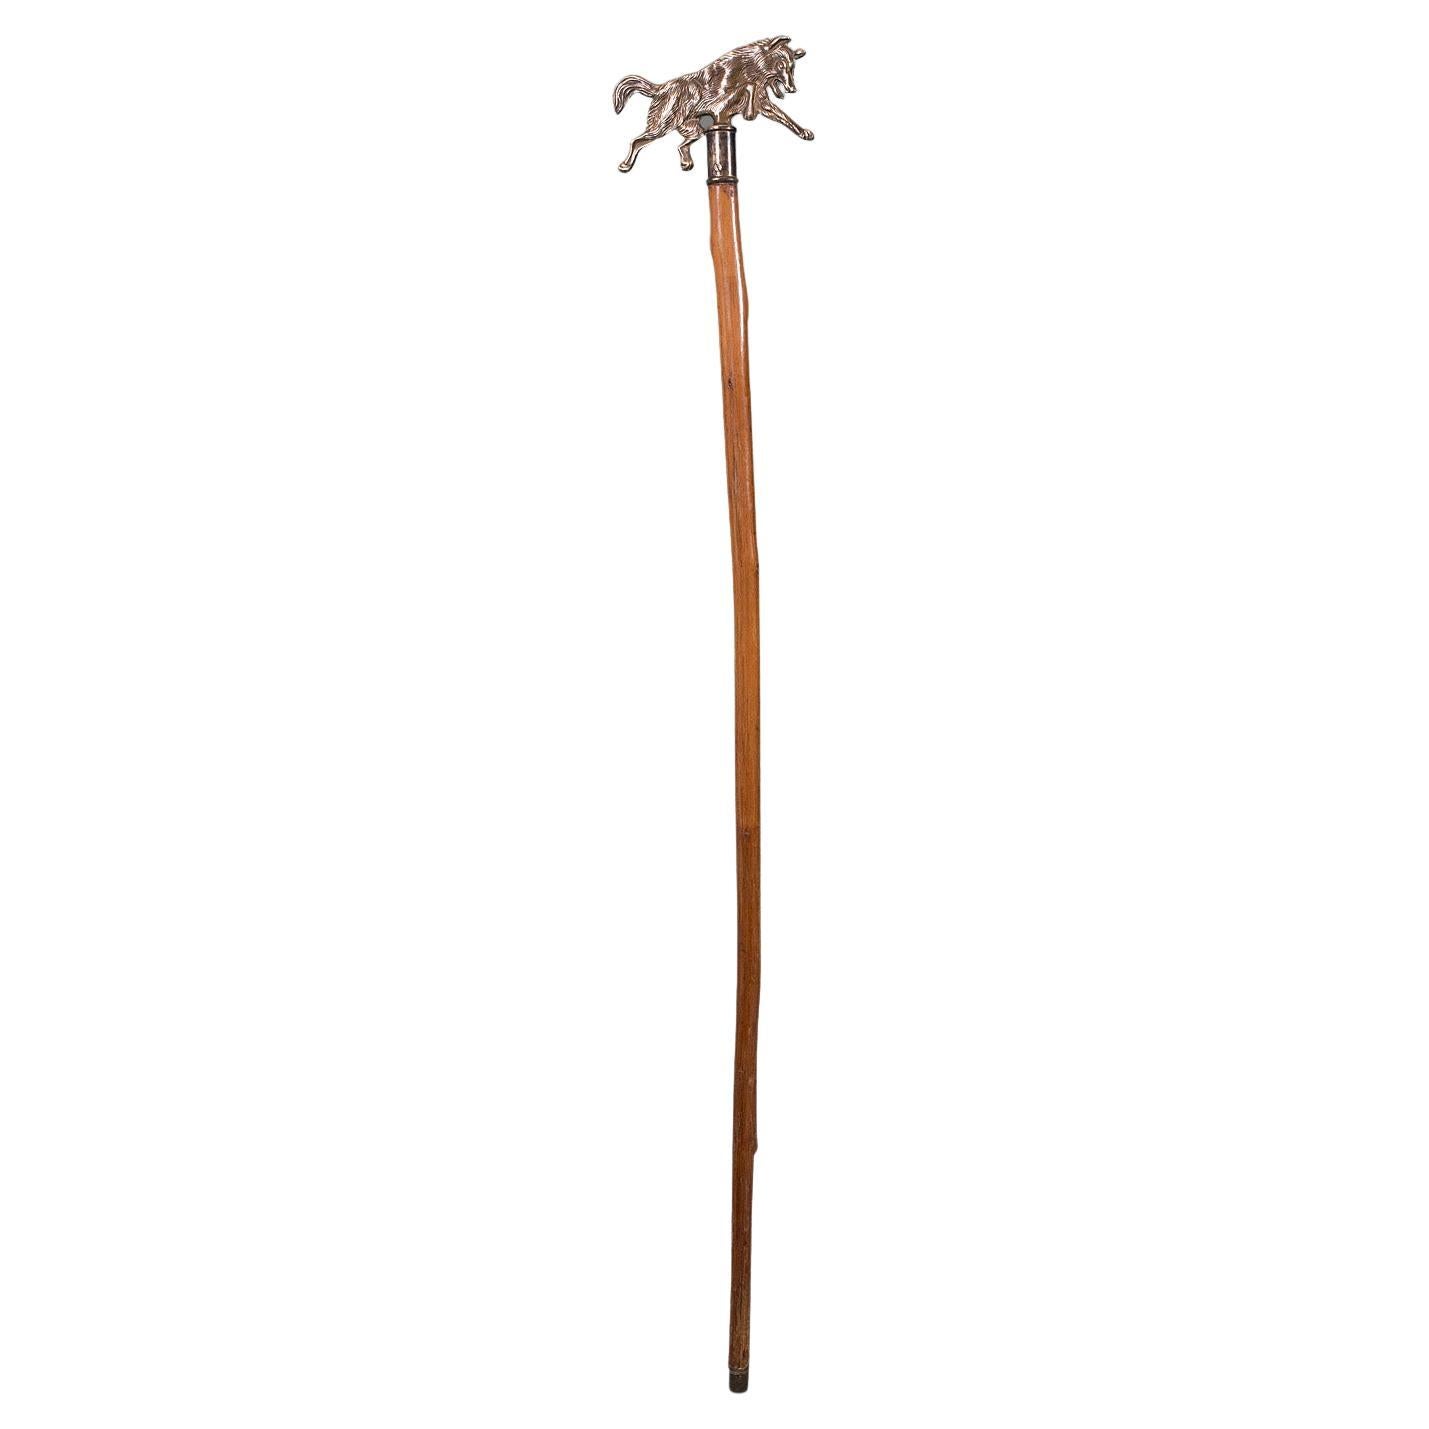 Gentleman's Walking Stick, englisch, Bugholz, Messing, Schilfrohr, Landhaus